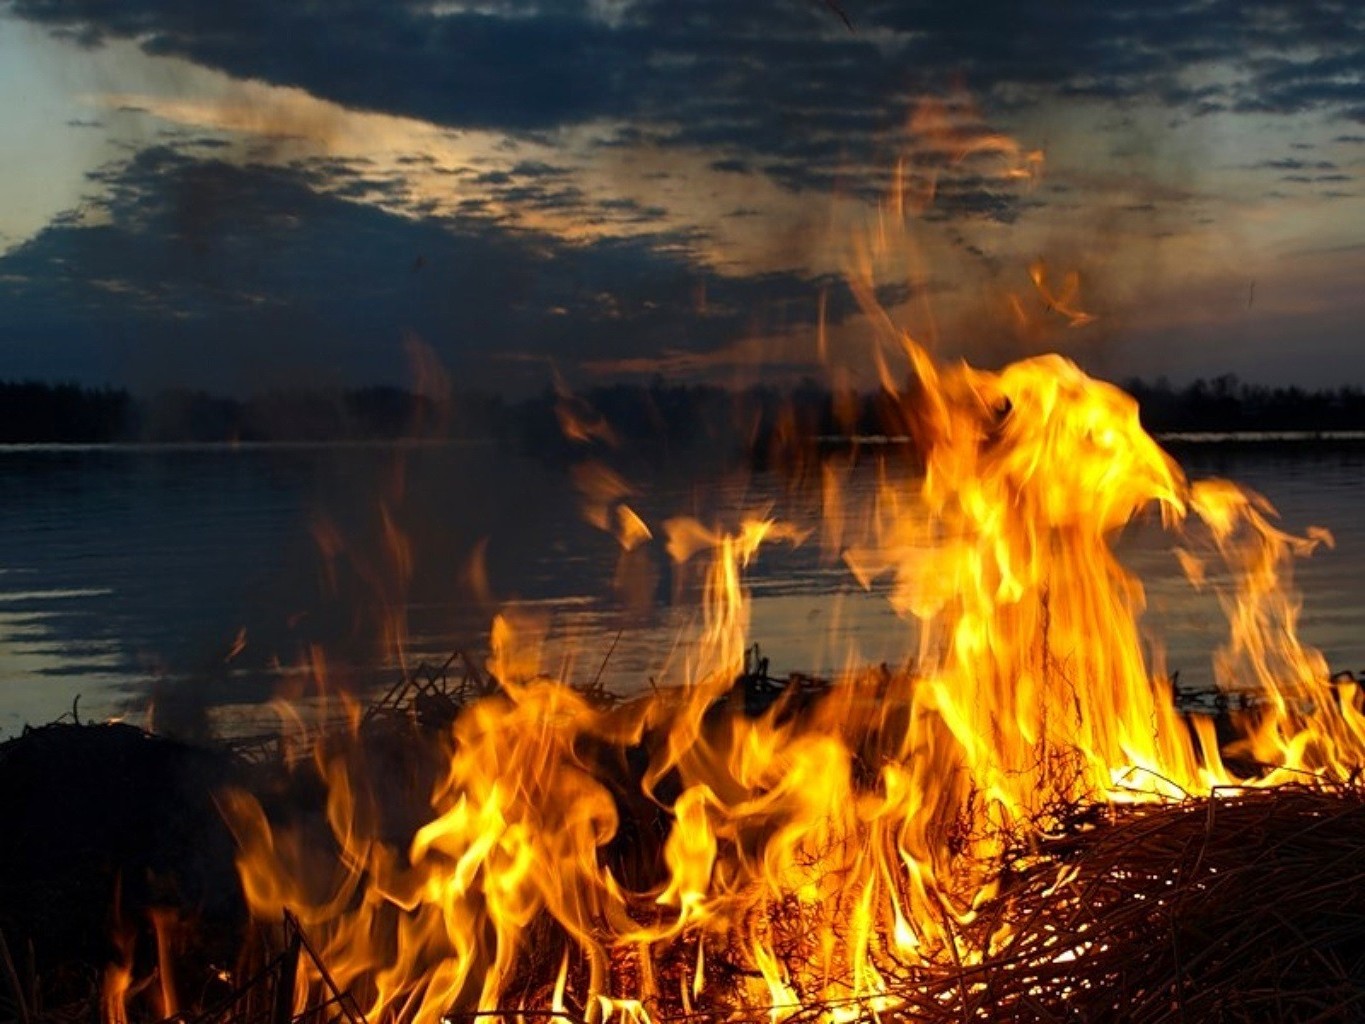 огонь пламя костер костра тепло горячая дрова пожар блейз инферно камин уголь сжечь дым тепло опасность уголь лагерь легковоспламеняющиеся ясень топлива